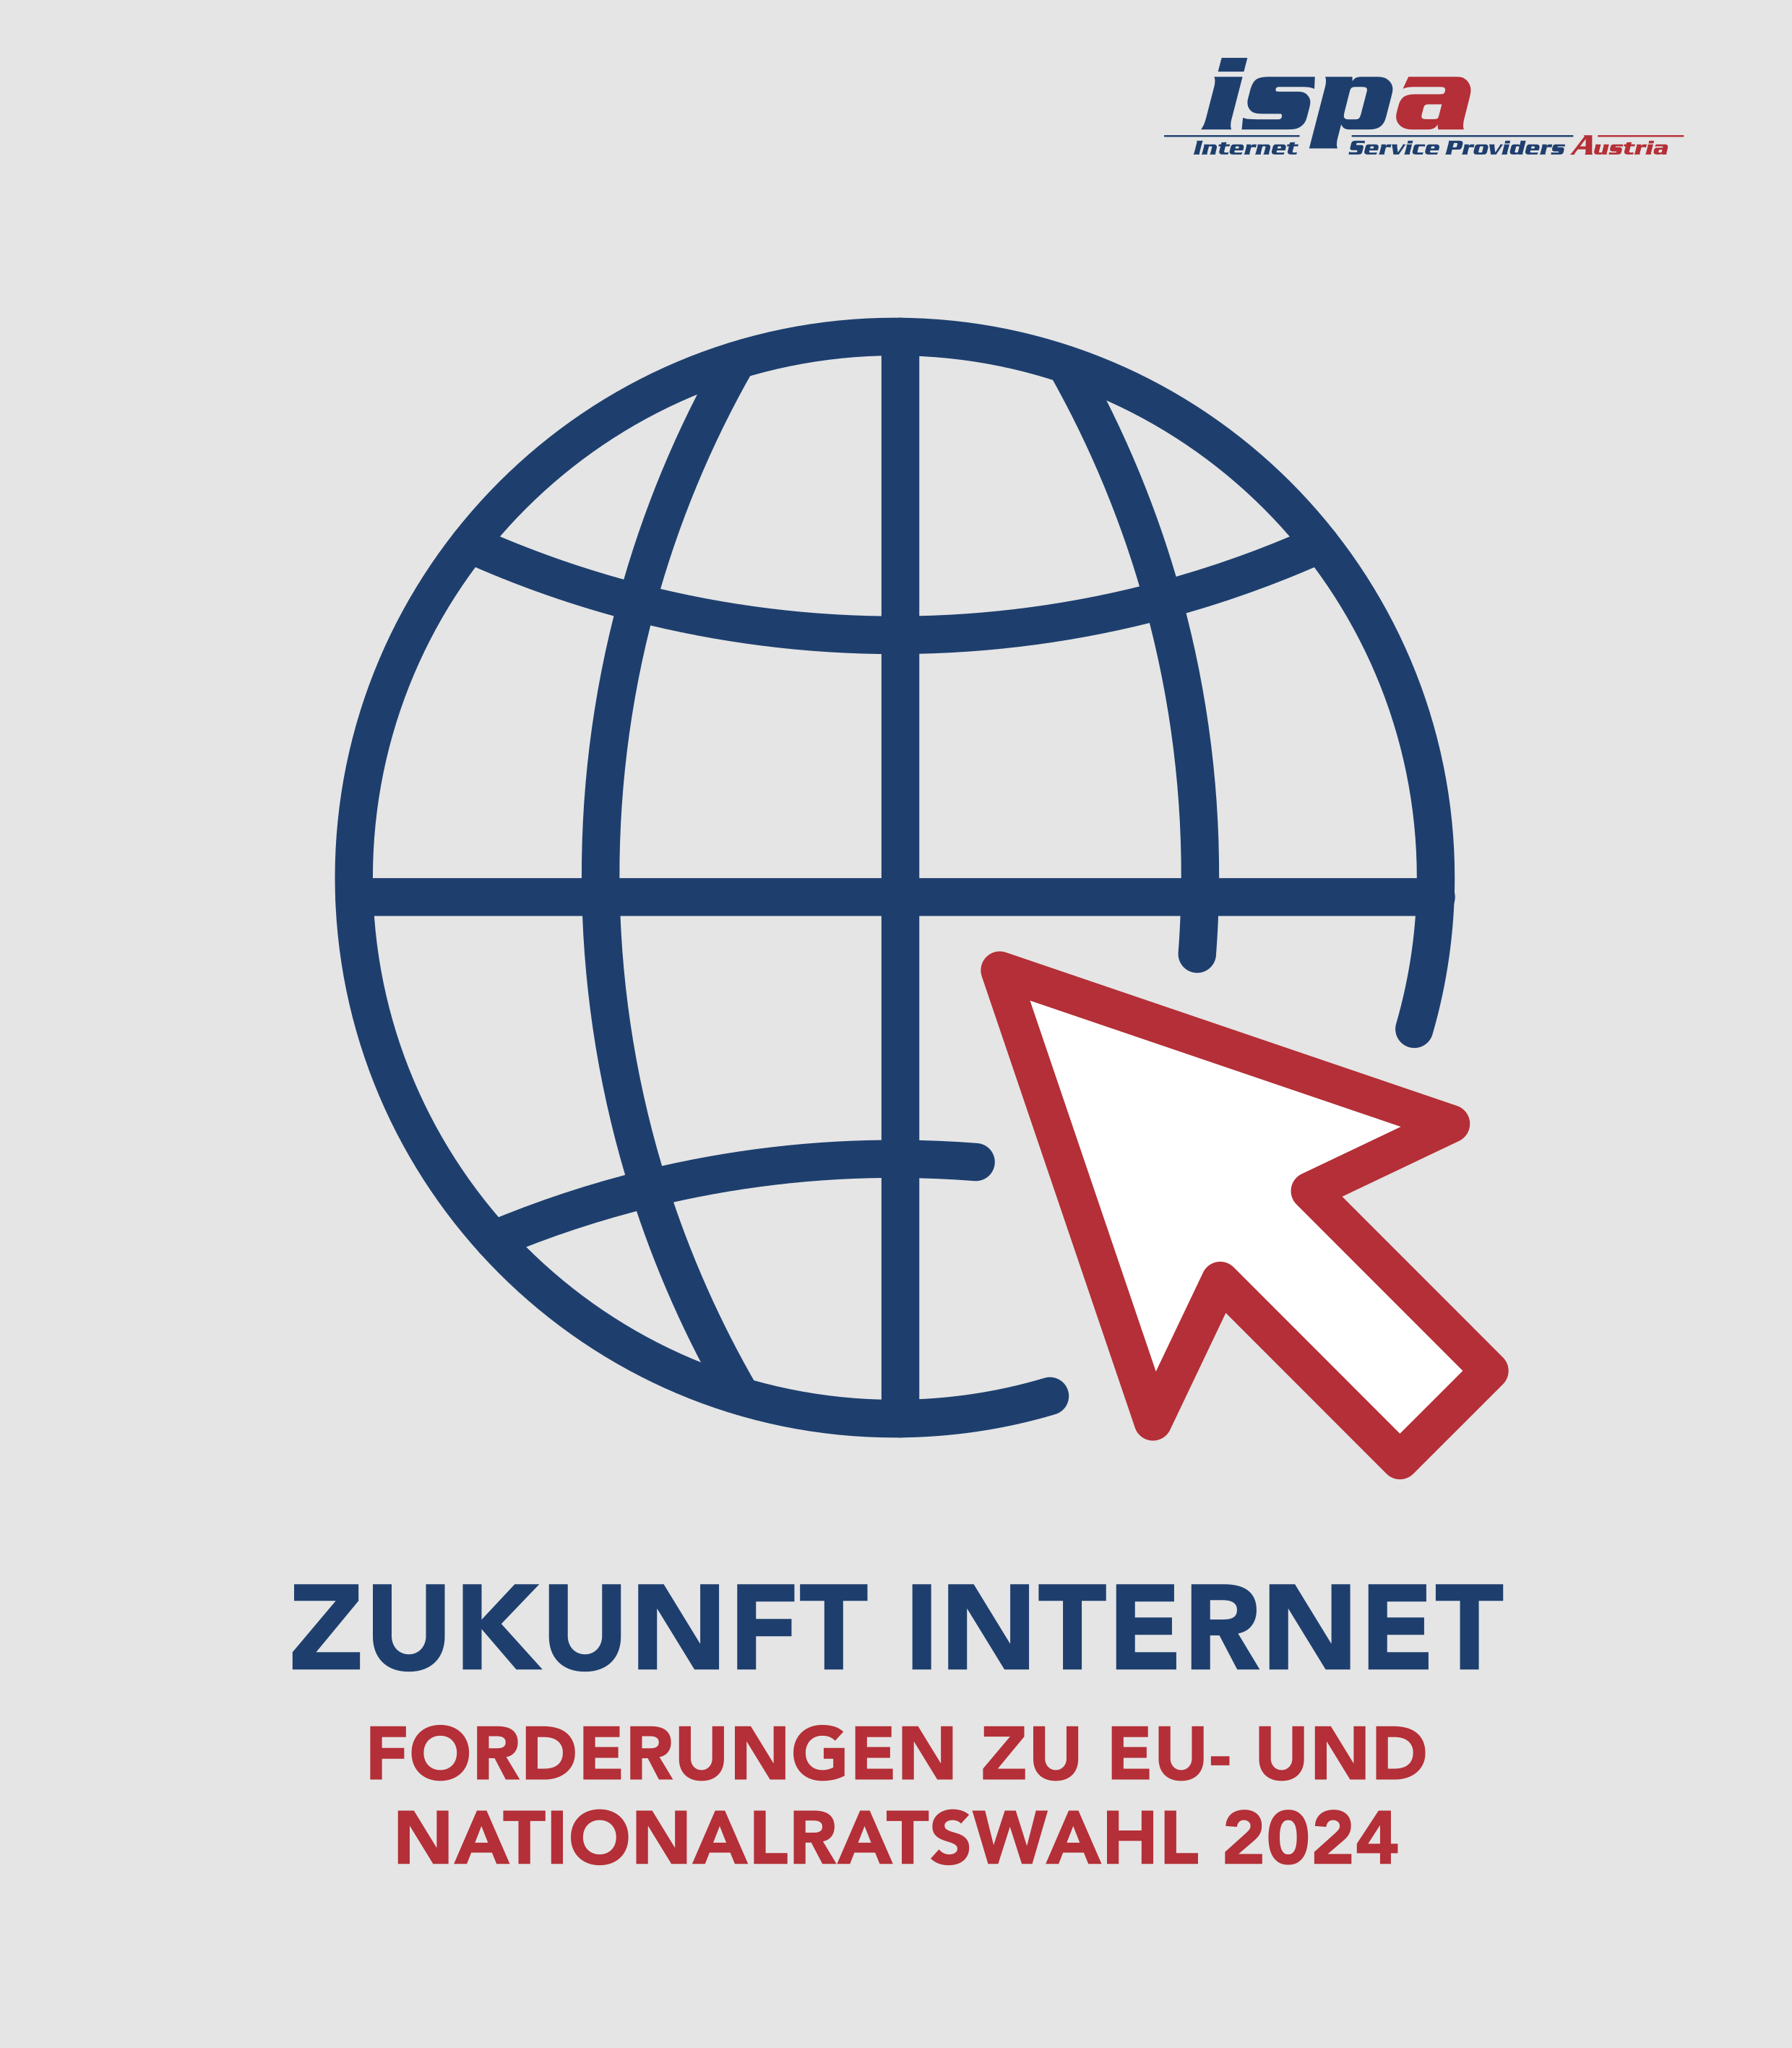 symbolische Weltkugel mit Internetverbindungen; ISPA-Logo; Zukunft Internet, Forderungen zu EU- und Nationalratswahl 2024